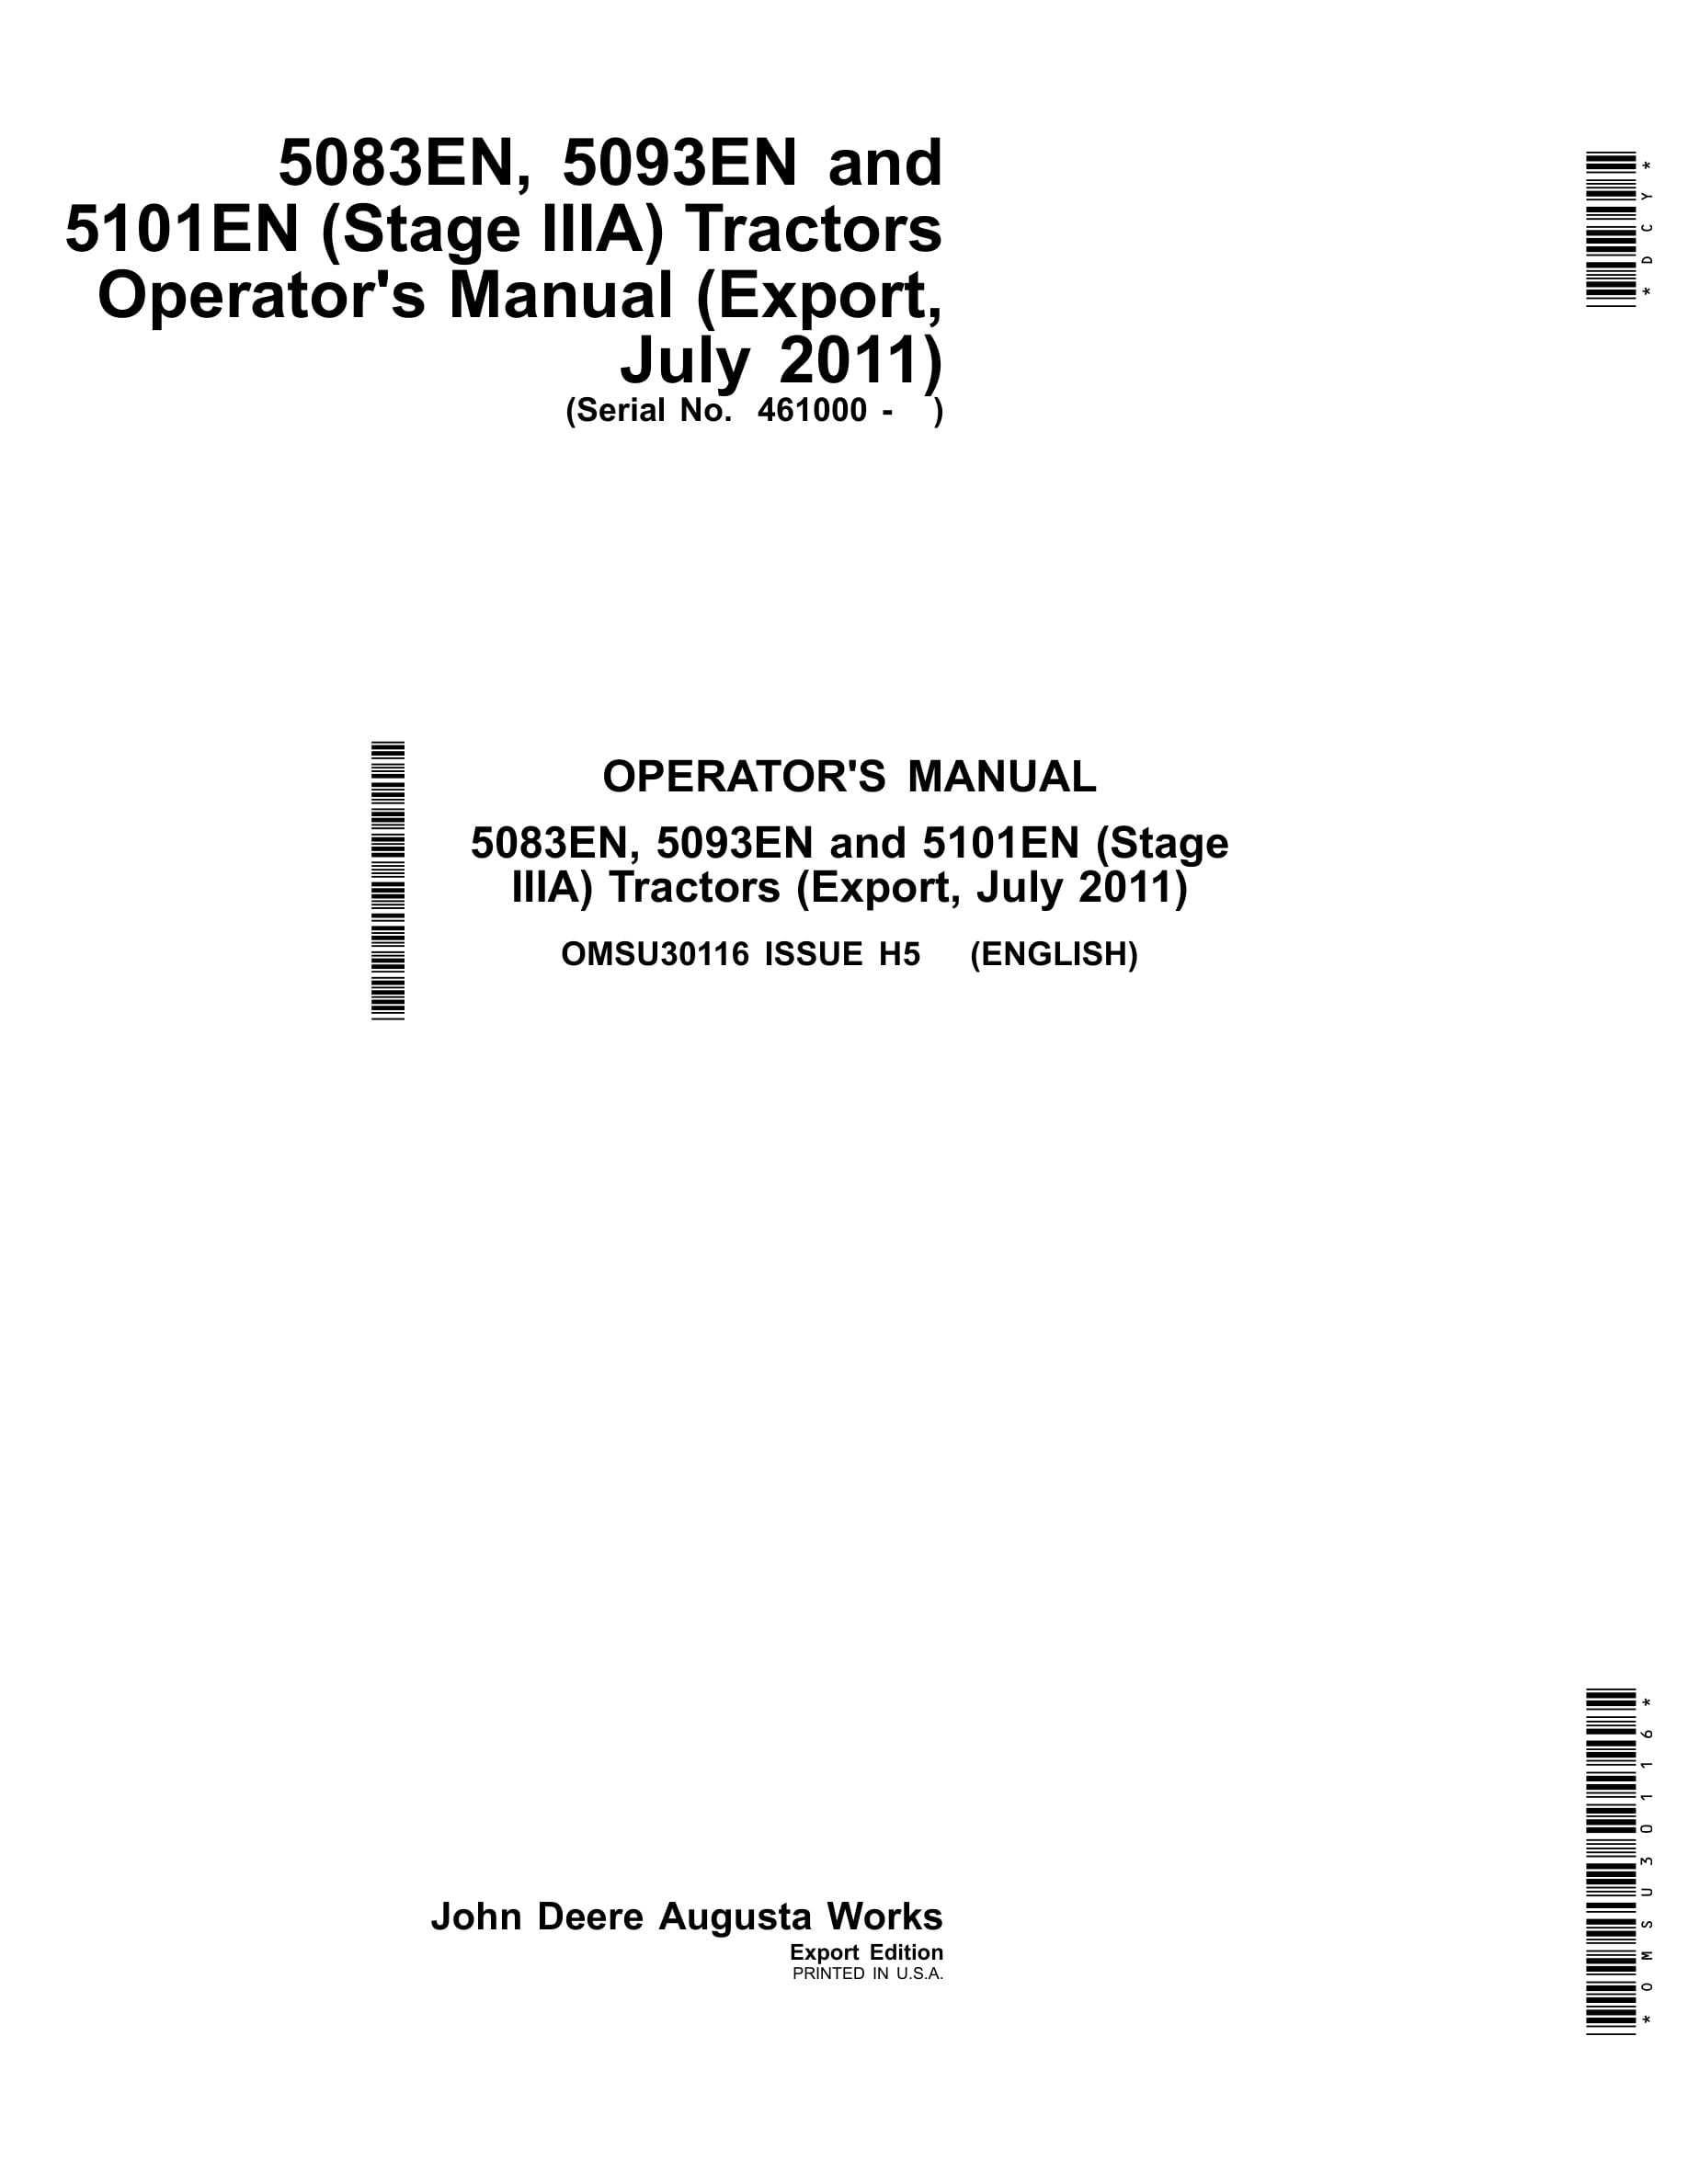 John Deere 5083en, 5093en And 5101en (stage Iiia) Tractors Operator Manuals OMSU30116-1